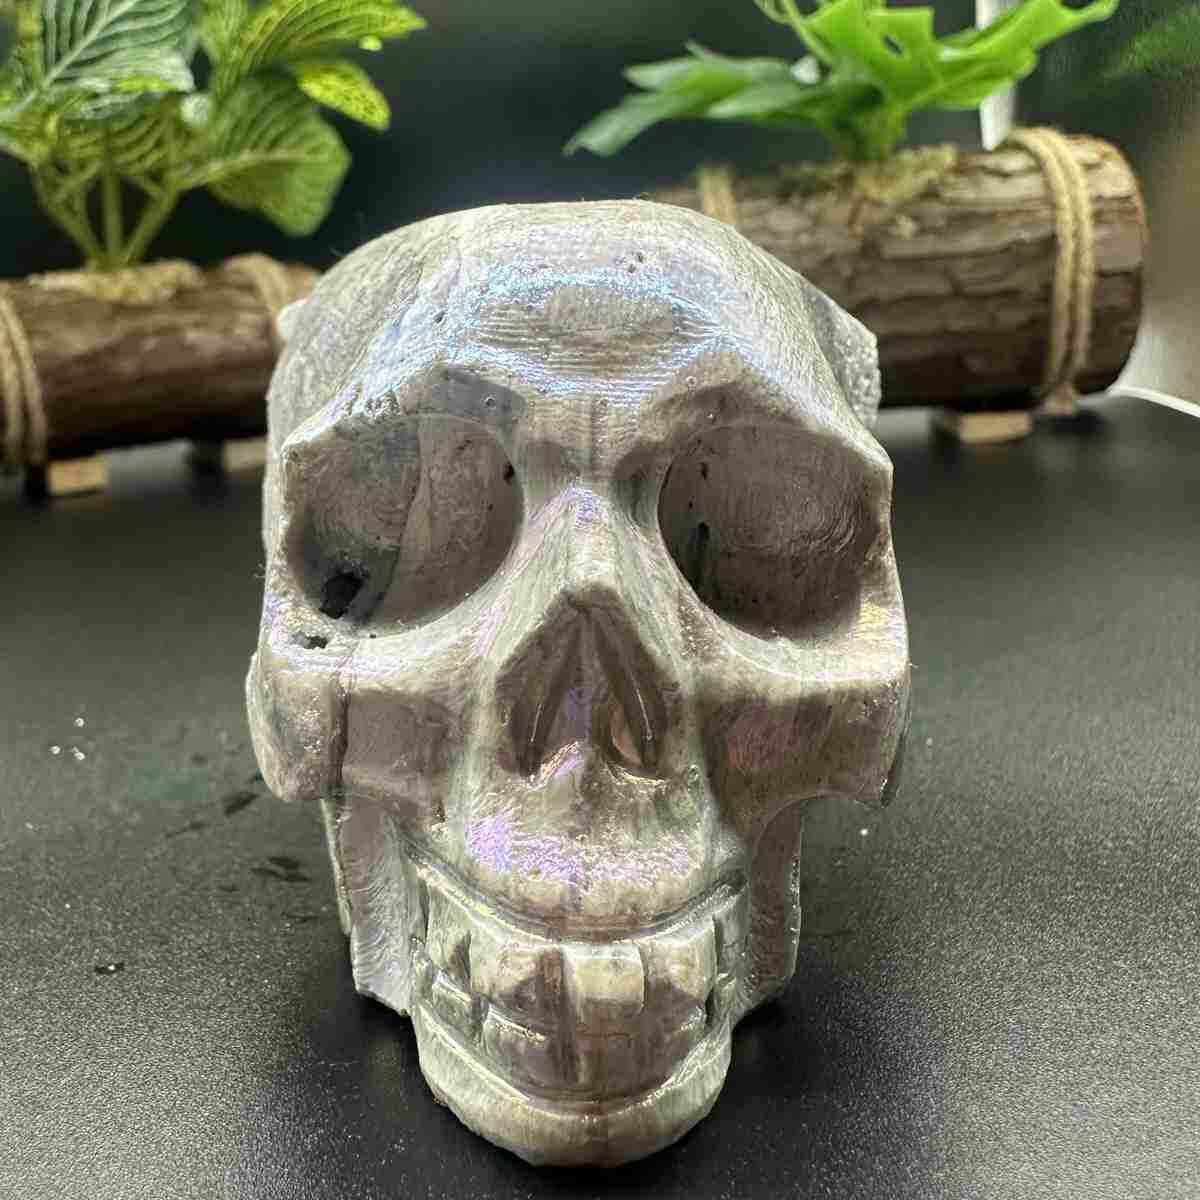 450g electroplate Natural sphalerite hand carved skull decor gem Healing gift